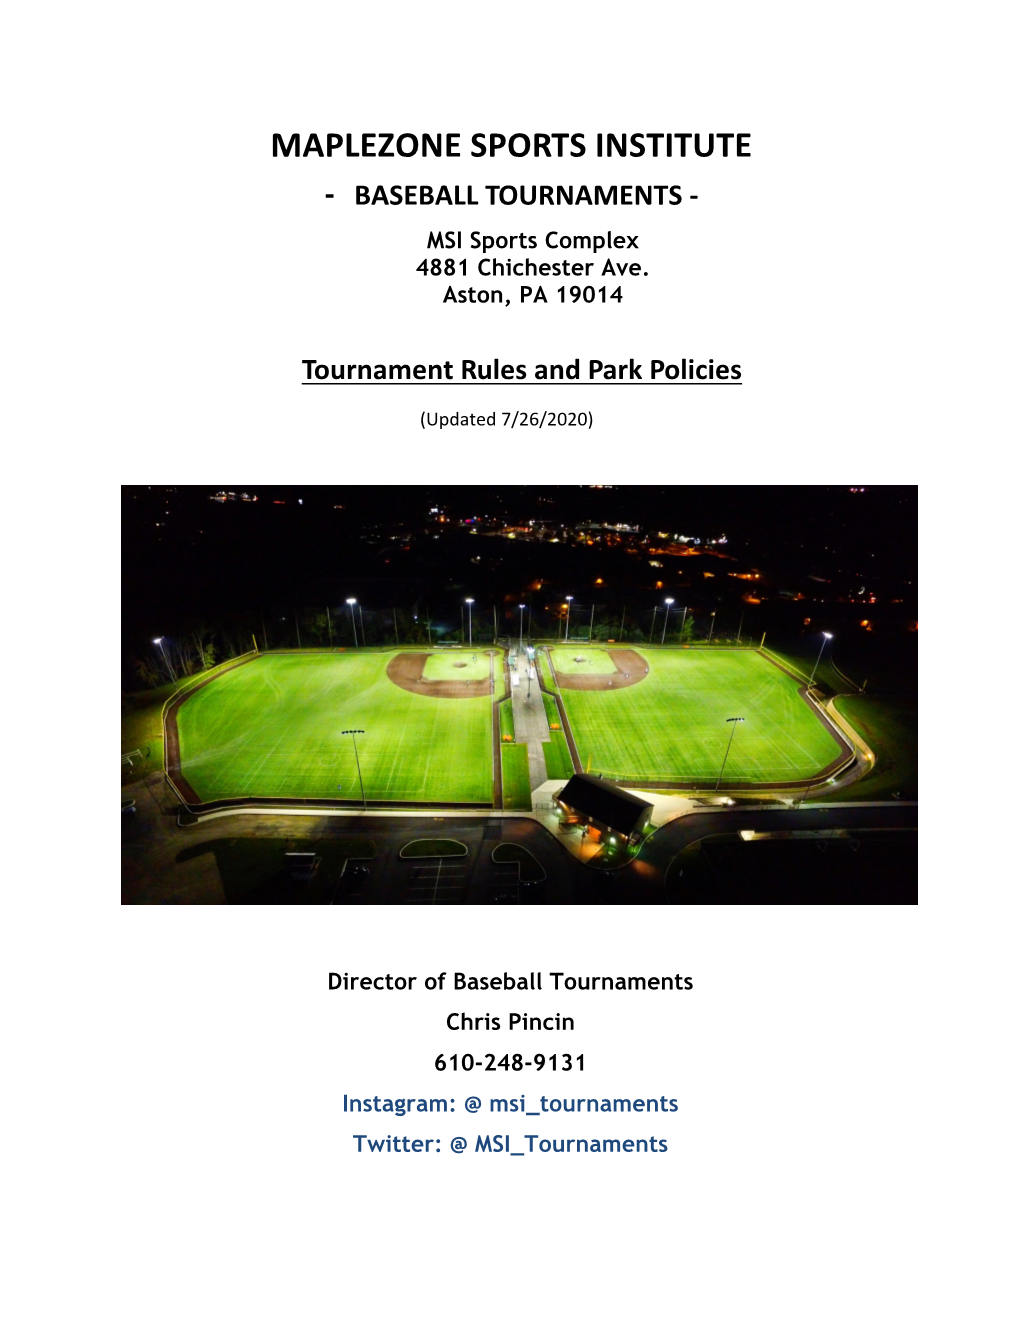 Maplezone Sports Institute - Baseball Tournaments